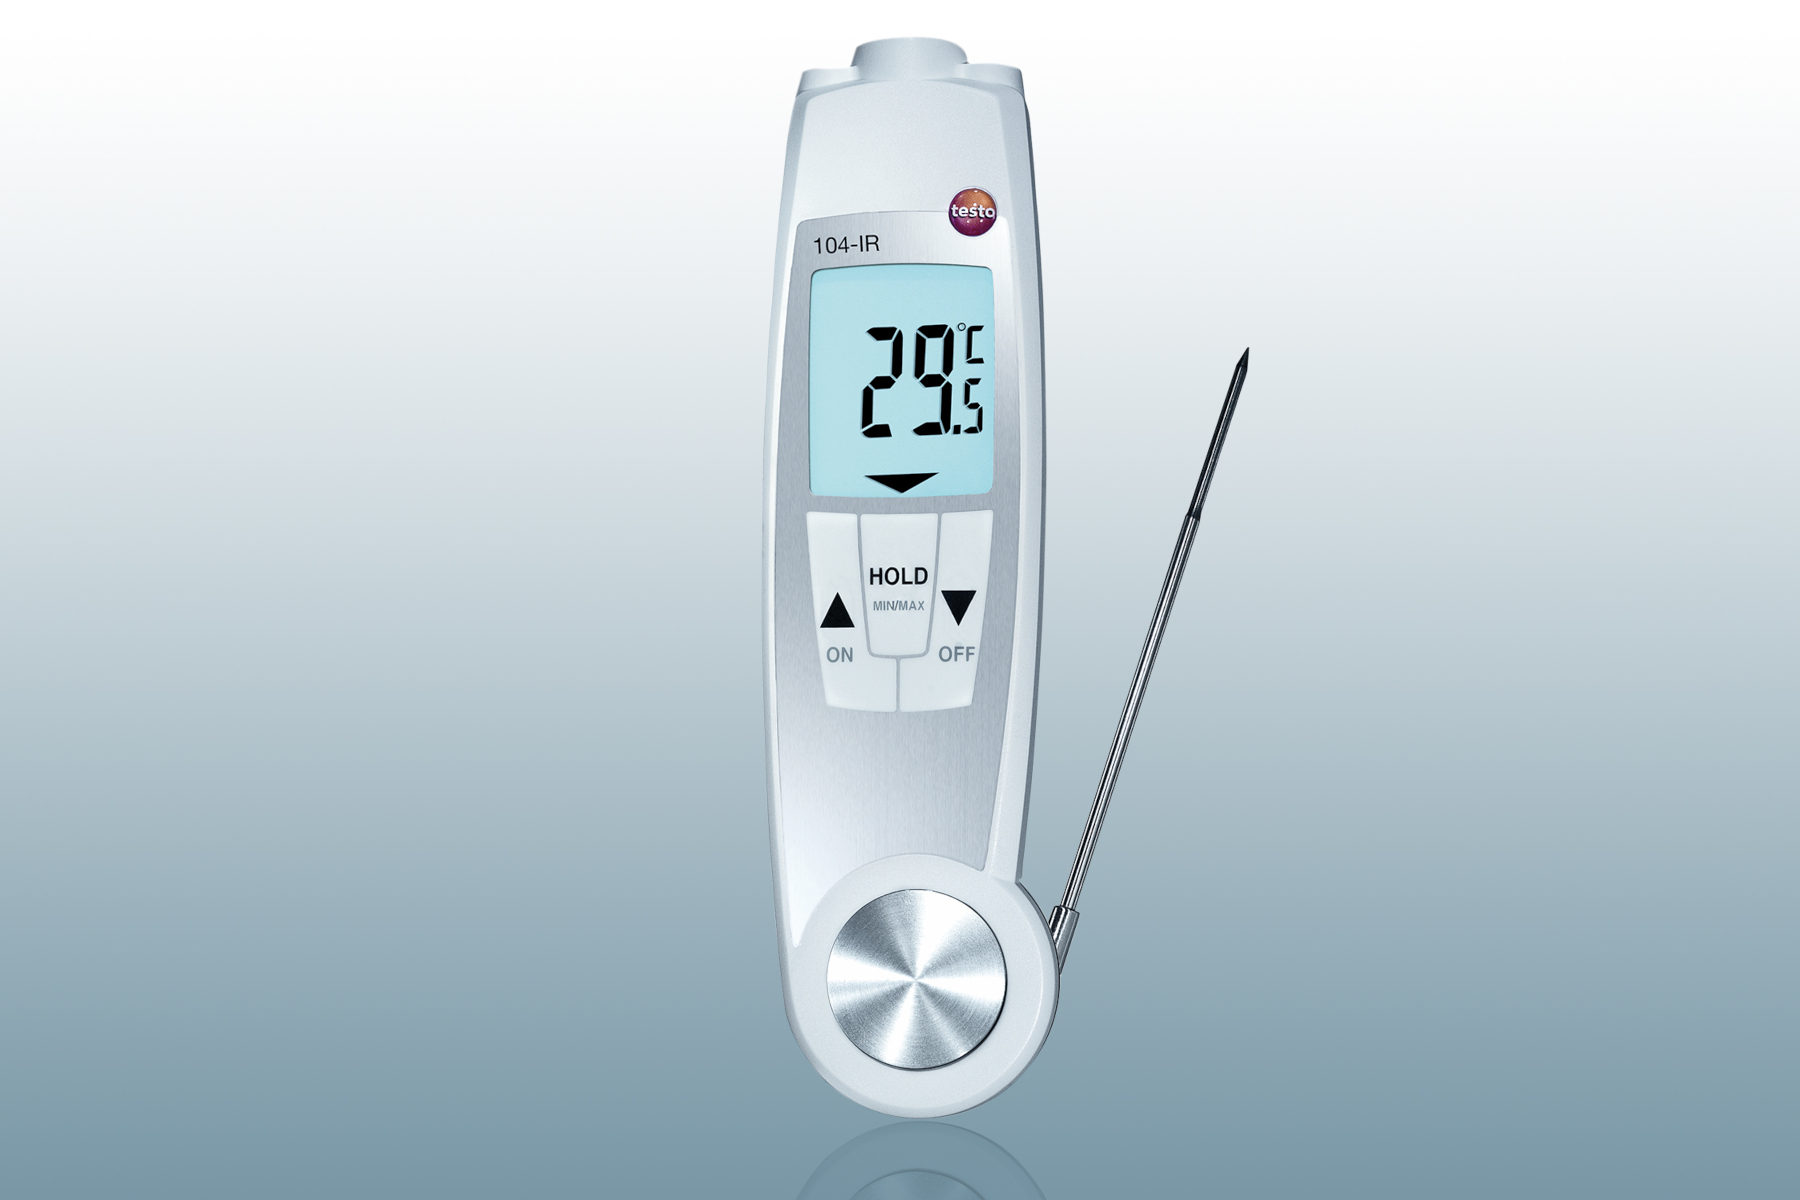 Mesureur de température laser PCE-894, mesureur de température